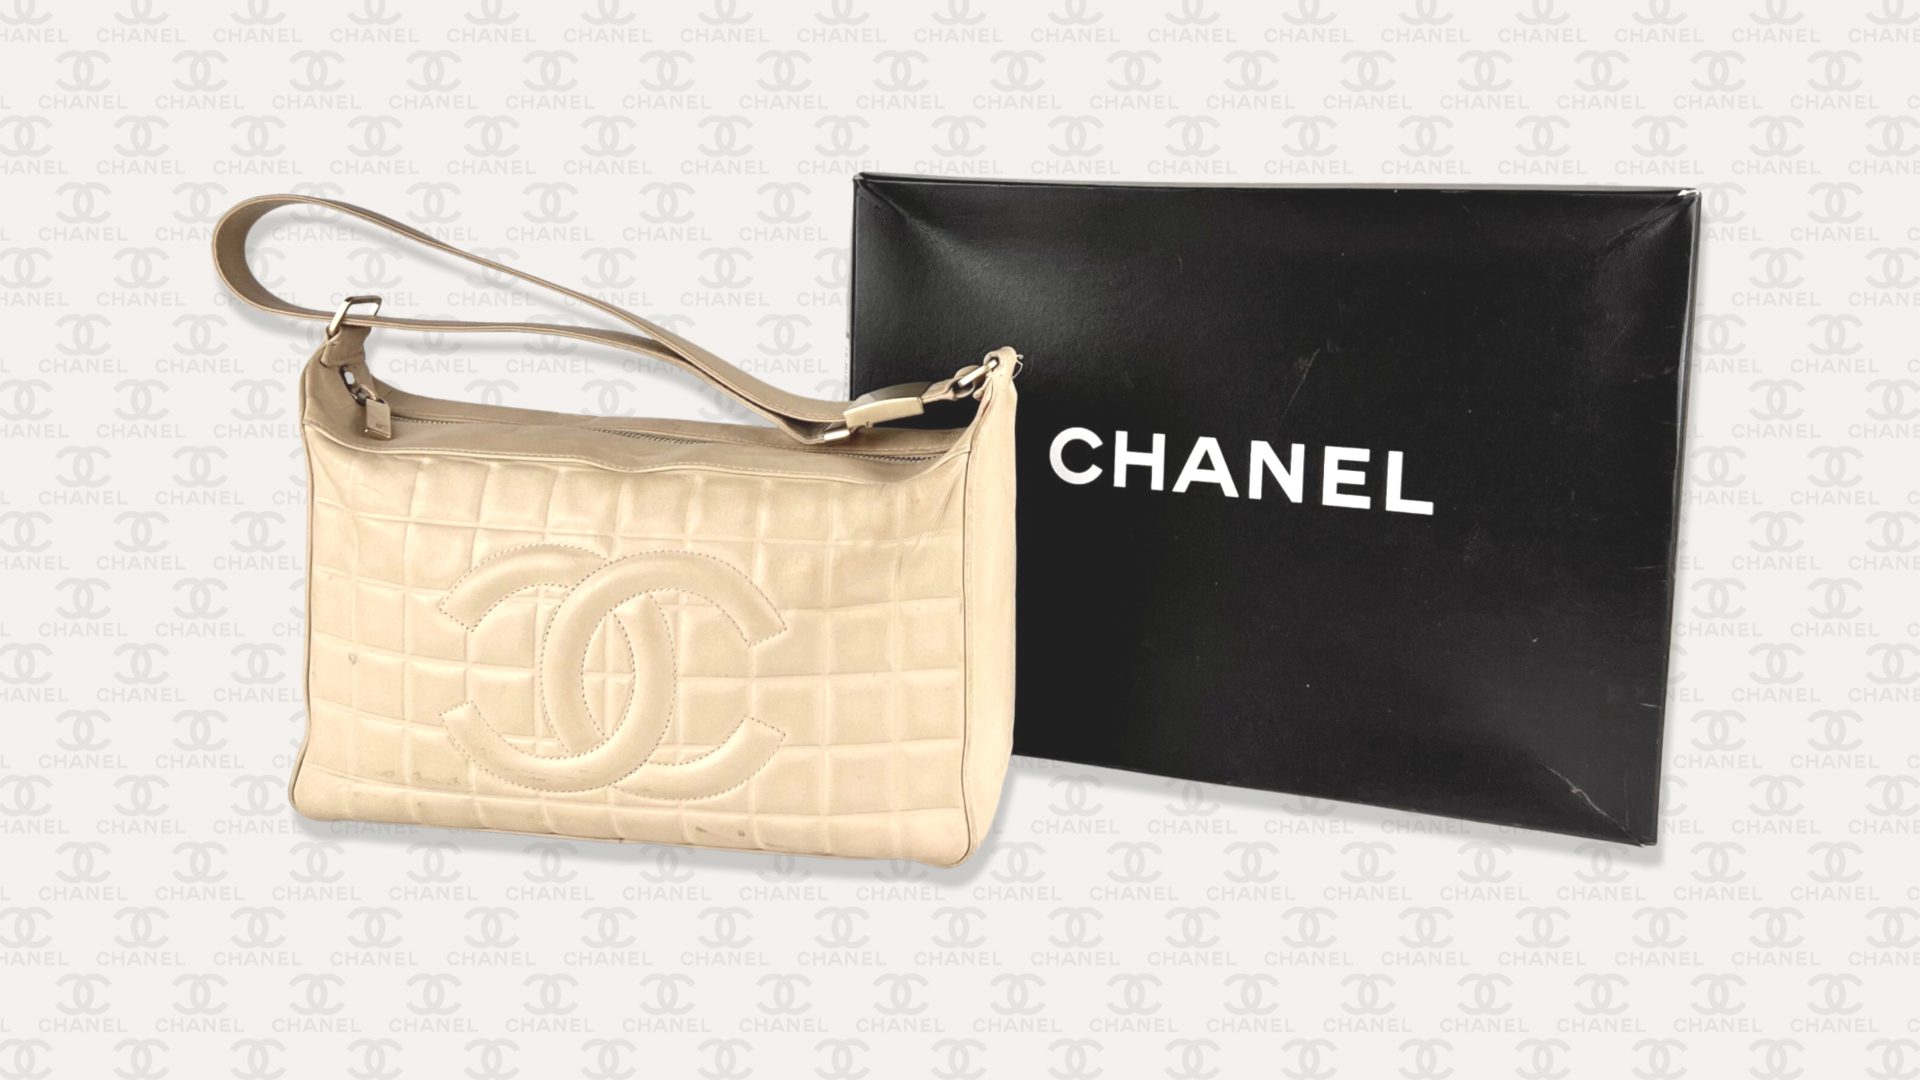 Chanel Handbag with box